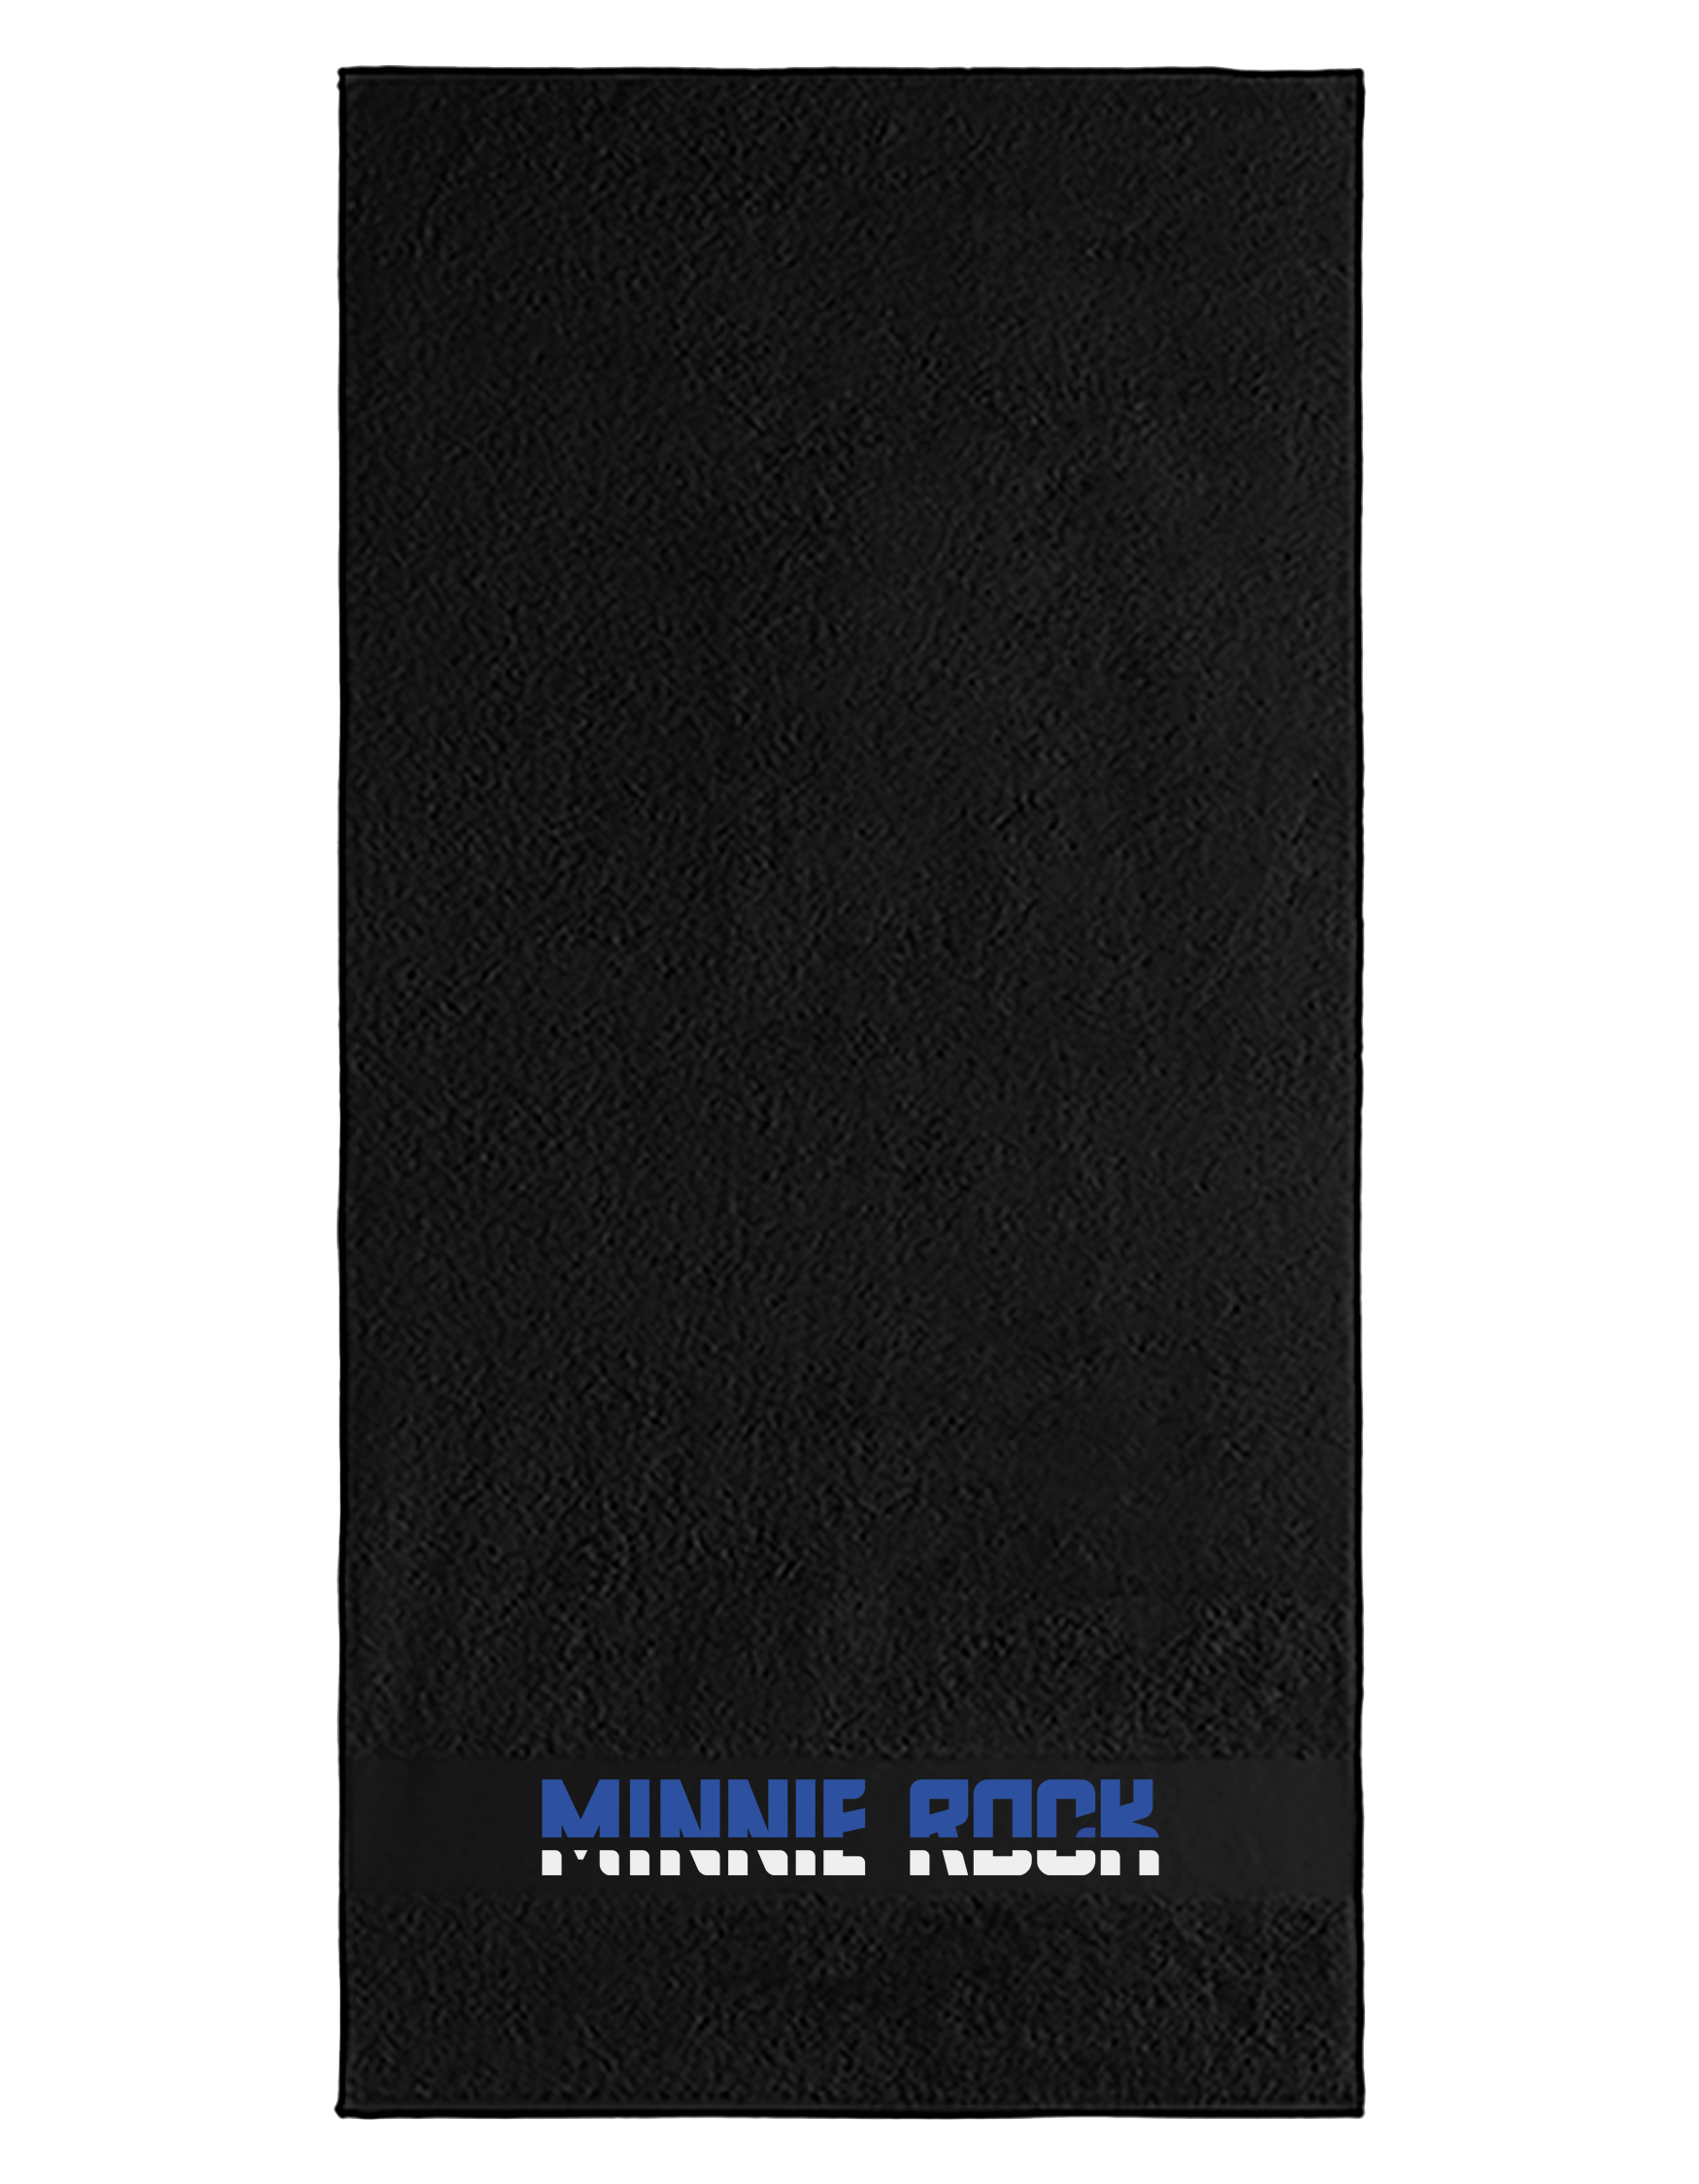 minnie rock - Schriftzug Handtuch [schwarz]